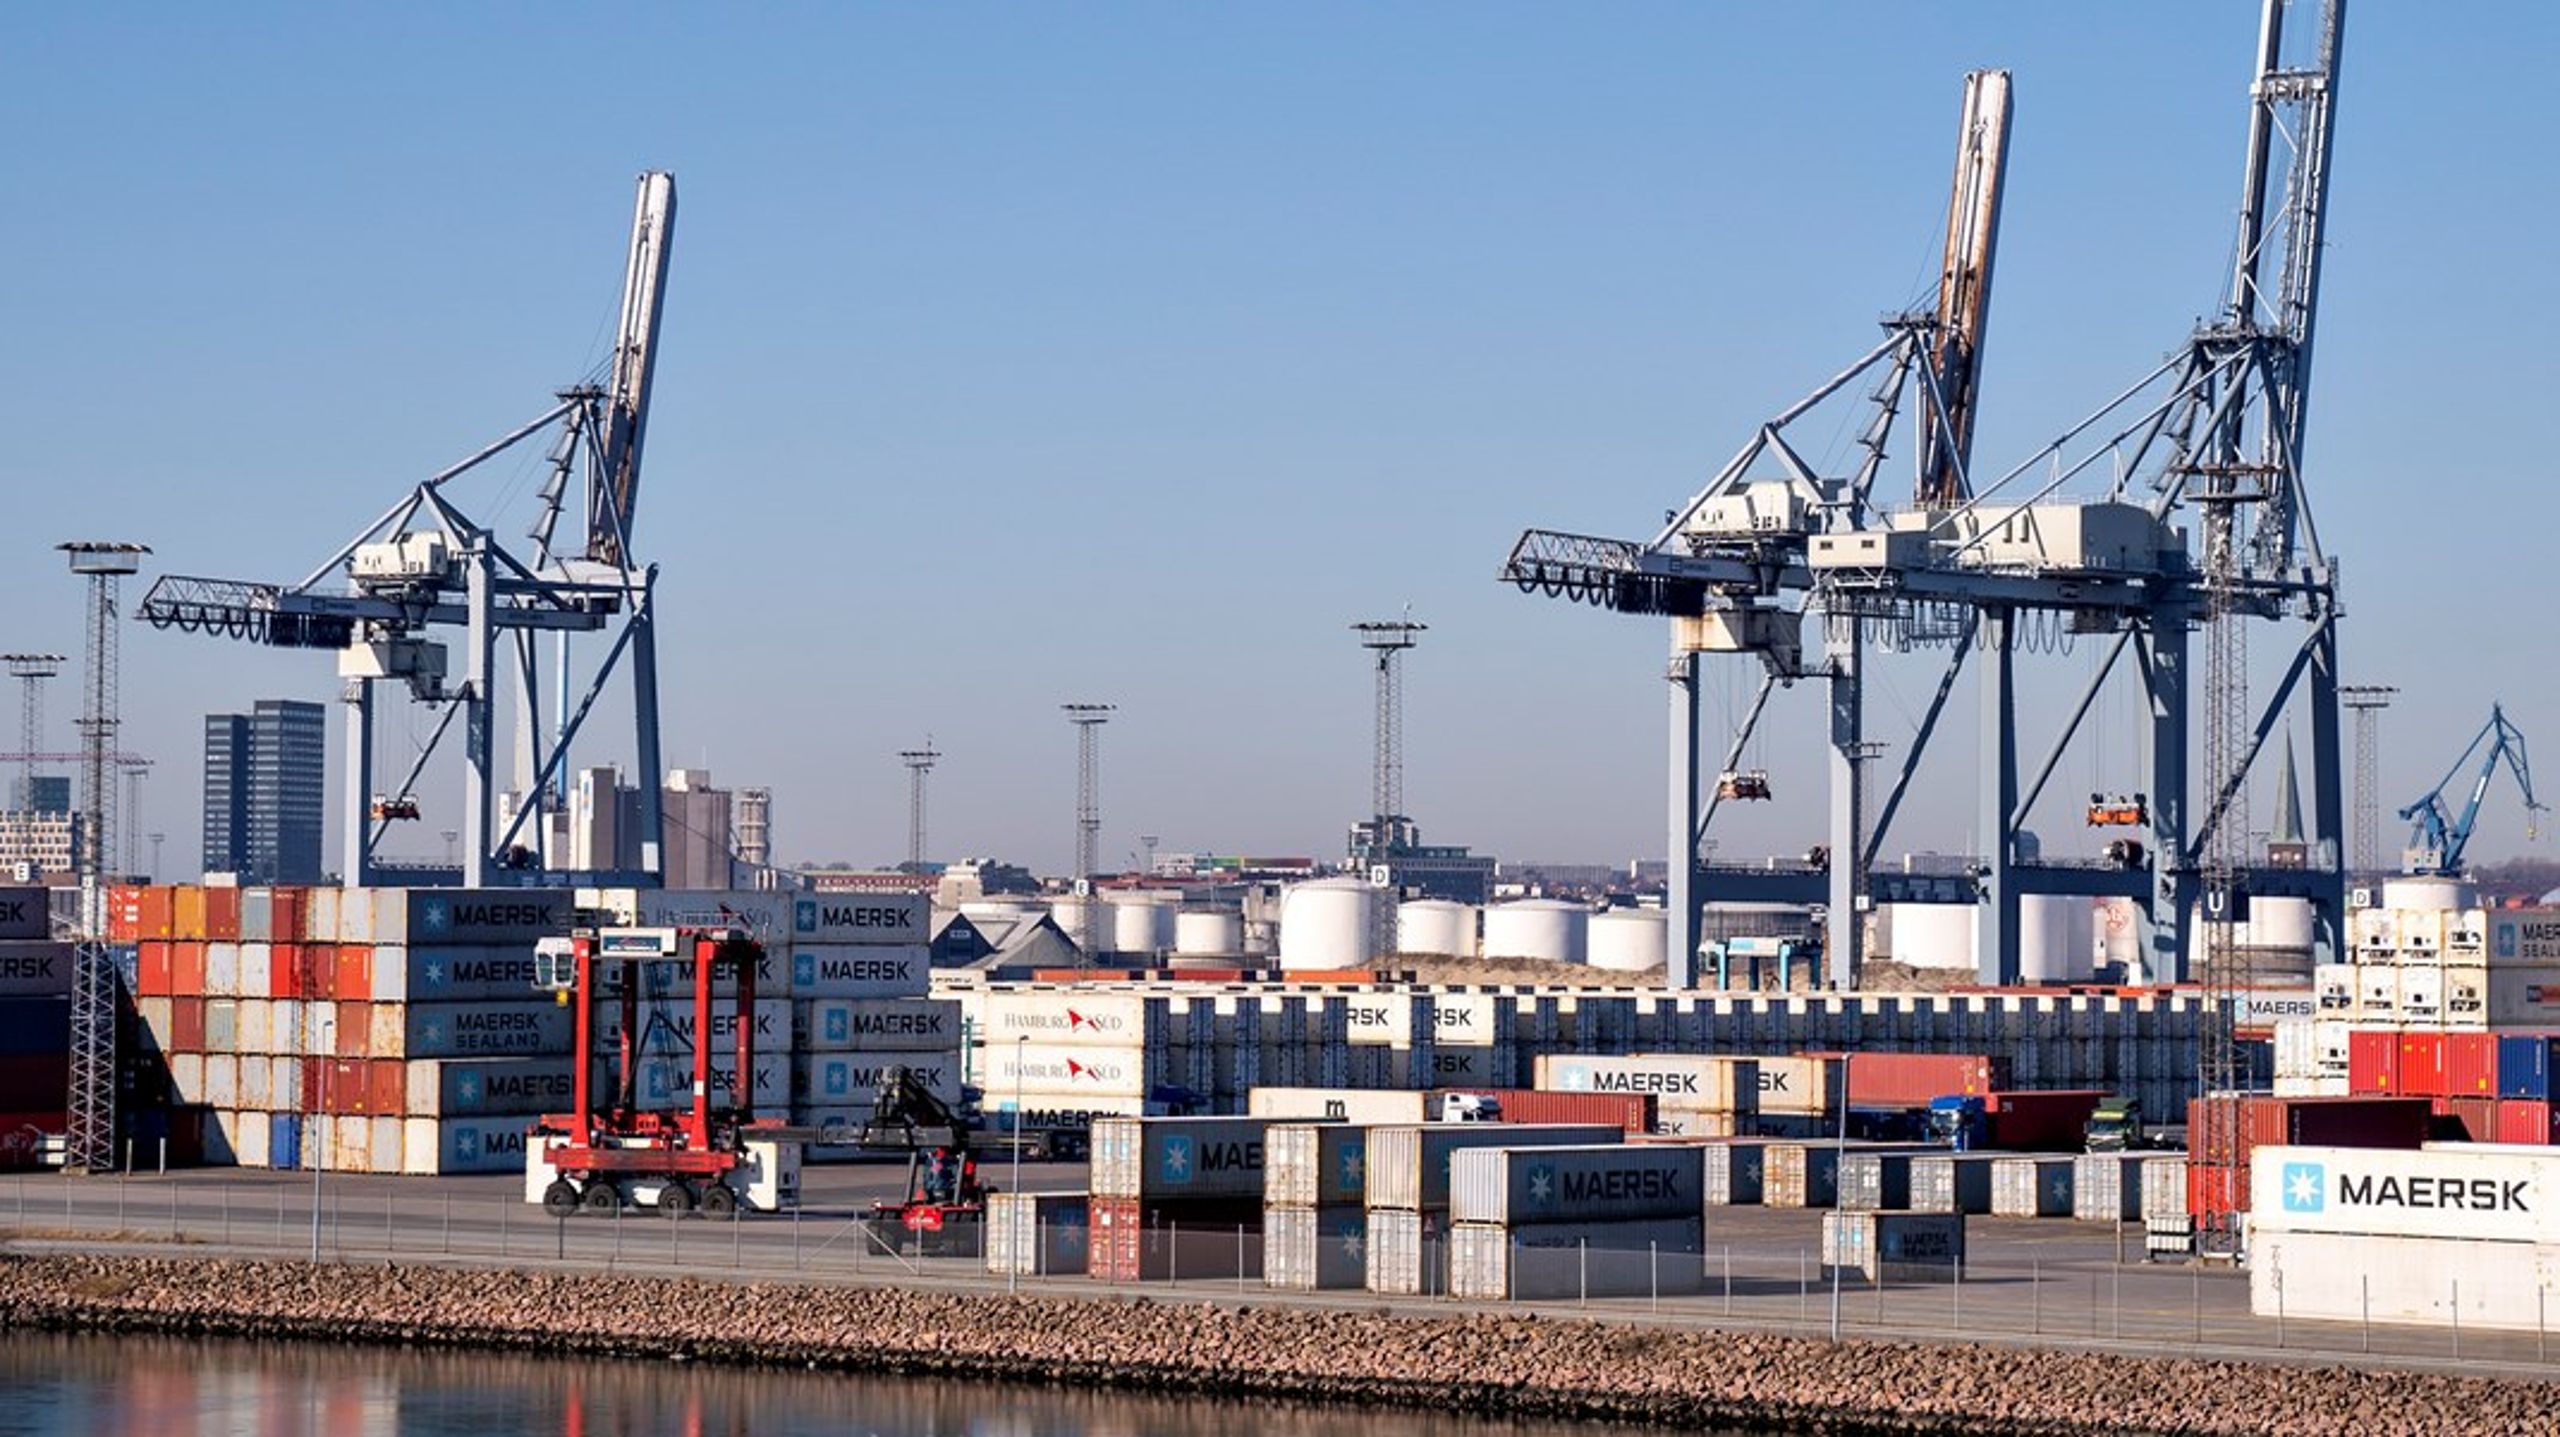 Aarhus Havn håndterer i dag to tredjedele af containergodset i Danmark, og trods vækst i også den del i 2020 har havnen for nylig meddelt, at de nedbragte deres CO2-aftryk med 14 procent i fjor, så havnen er sikker på at nå sit mål om CO2-neutralitet i 2030, skriver Tine Kirk og Carsten Aa.